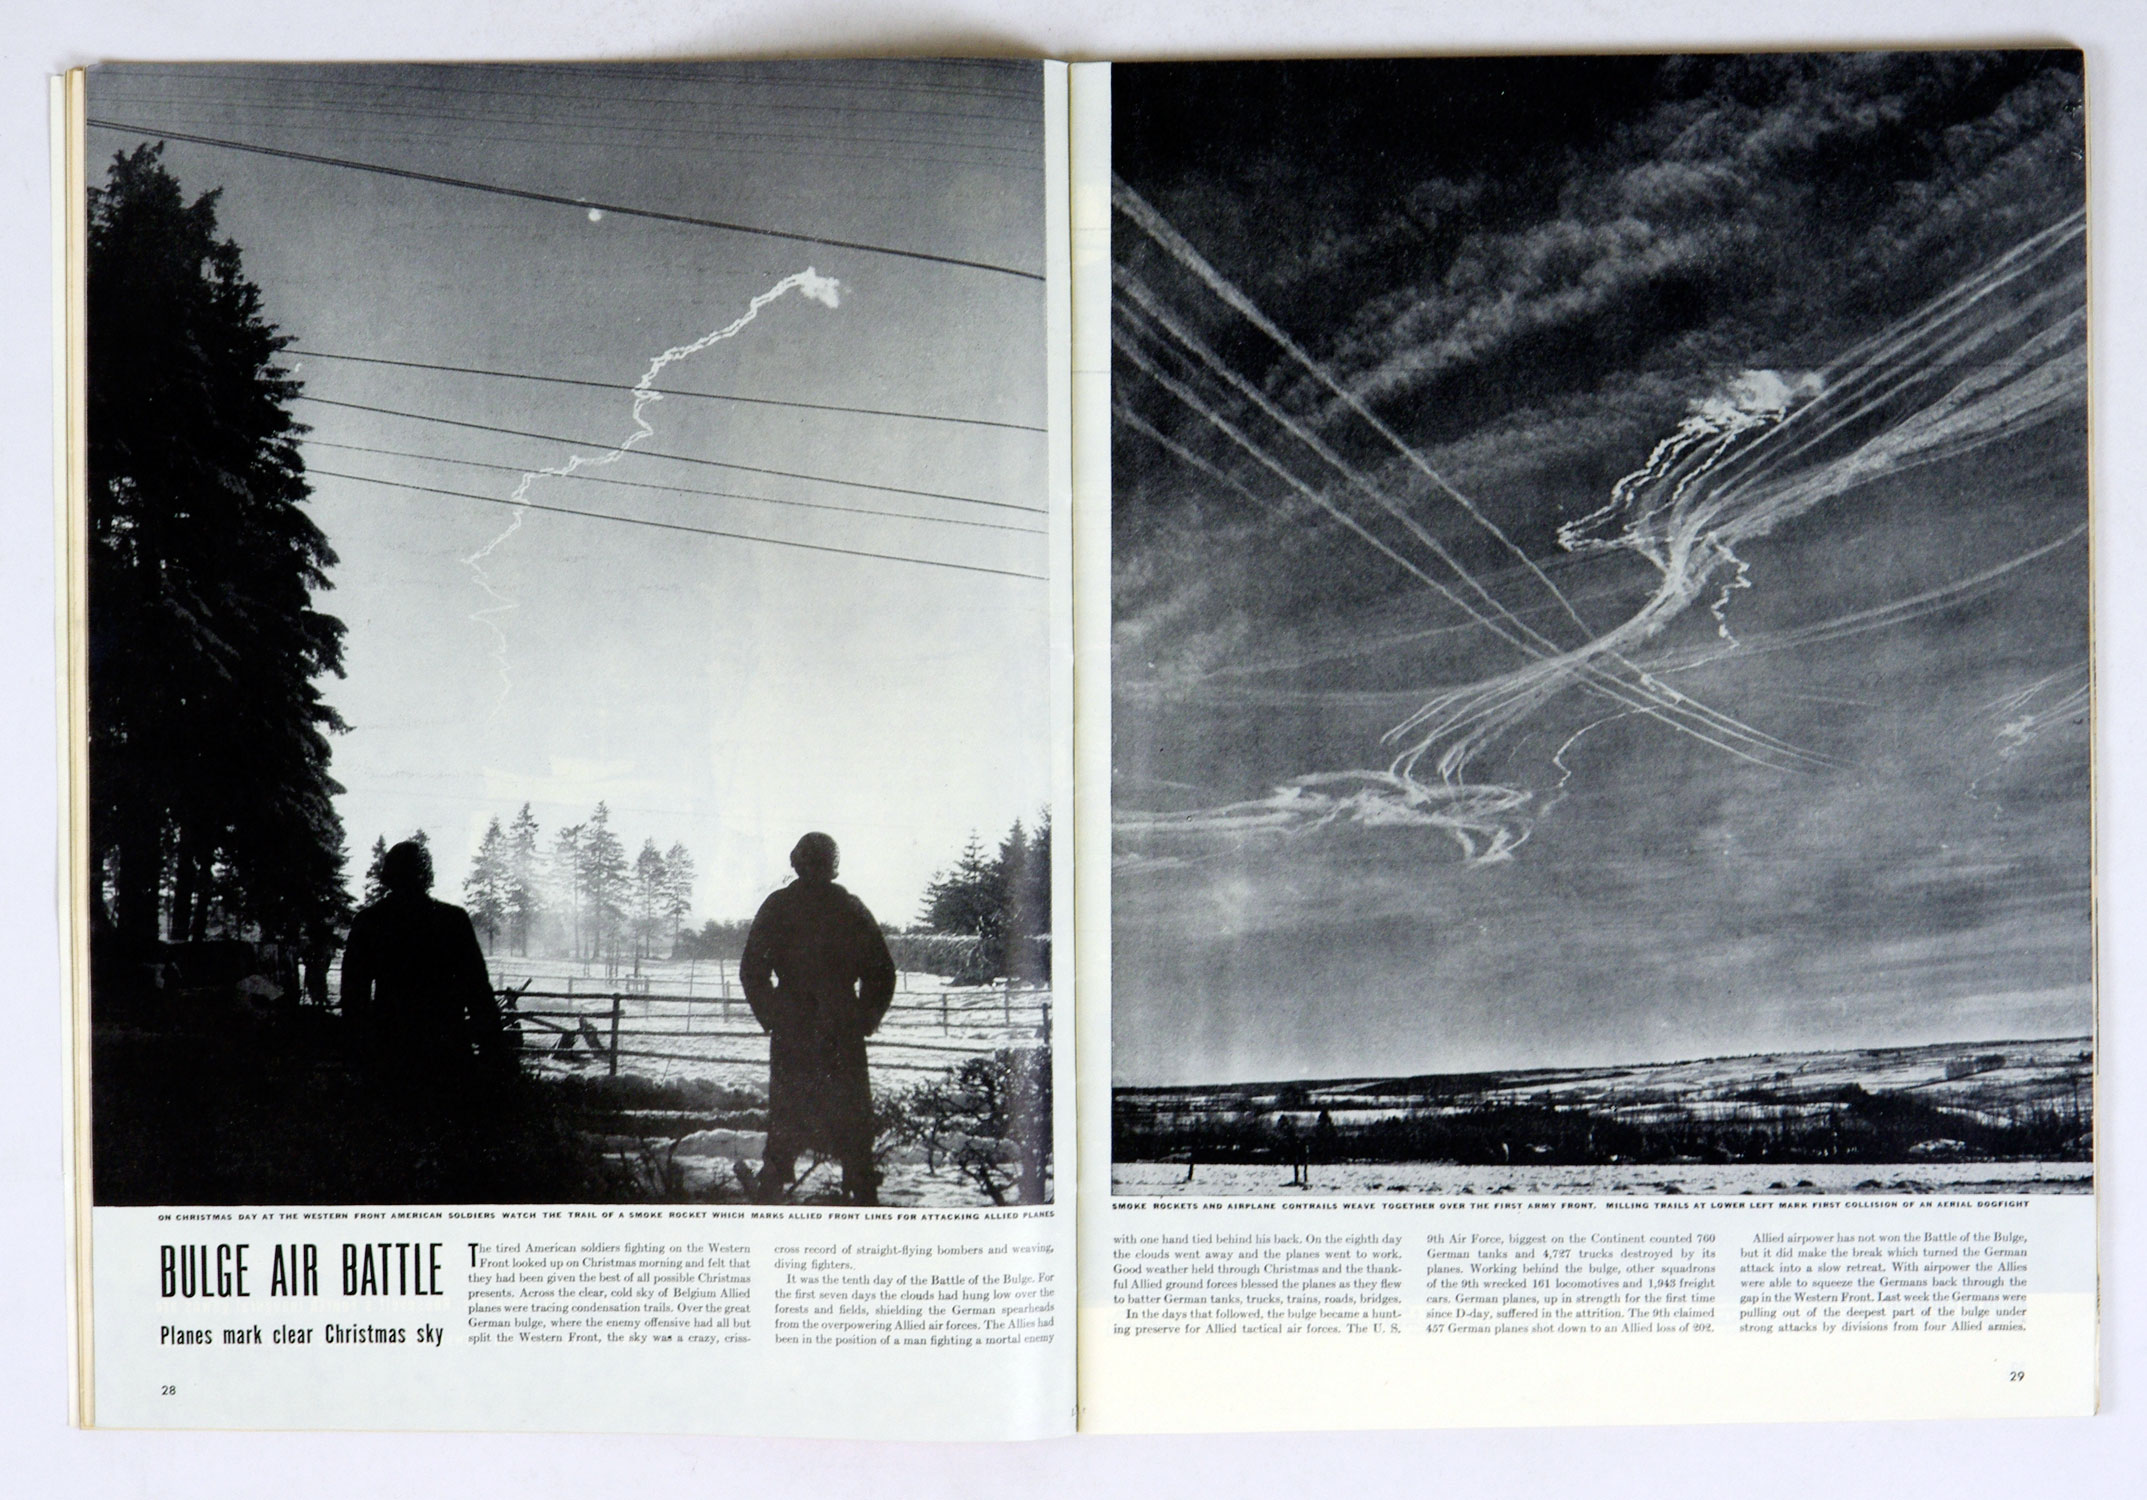 LIFE Magazine Back Issue 1945 January 22 Burge Air Battle Basketball